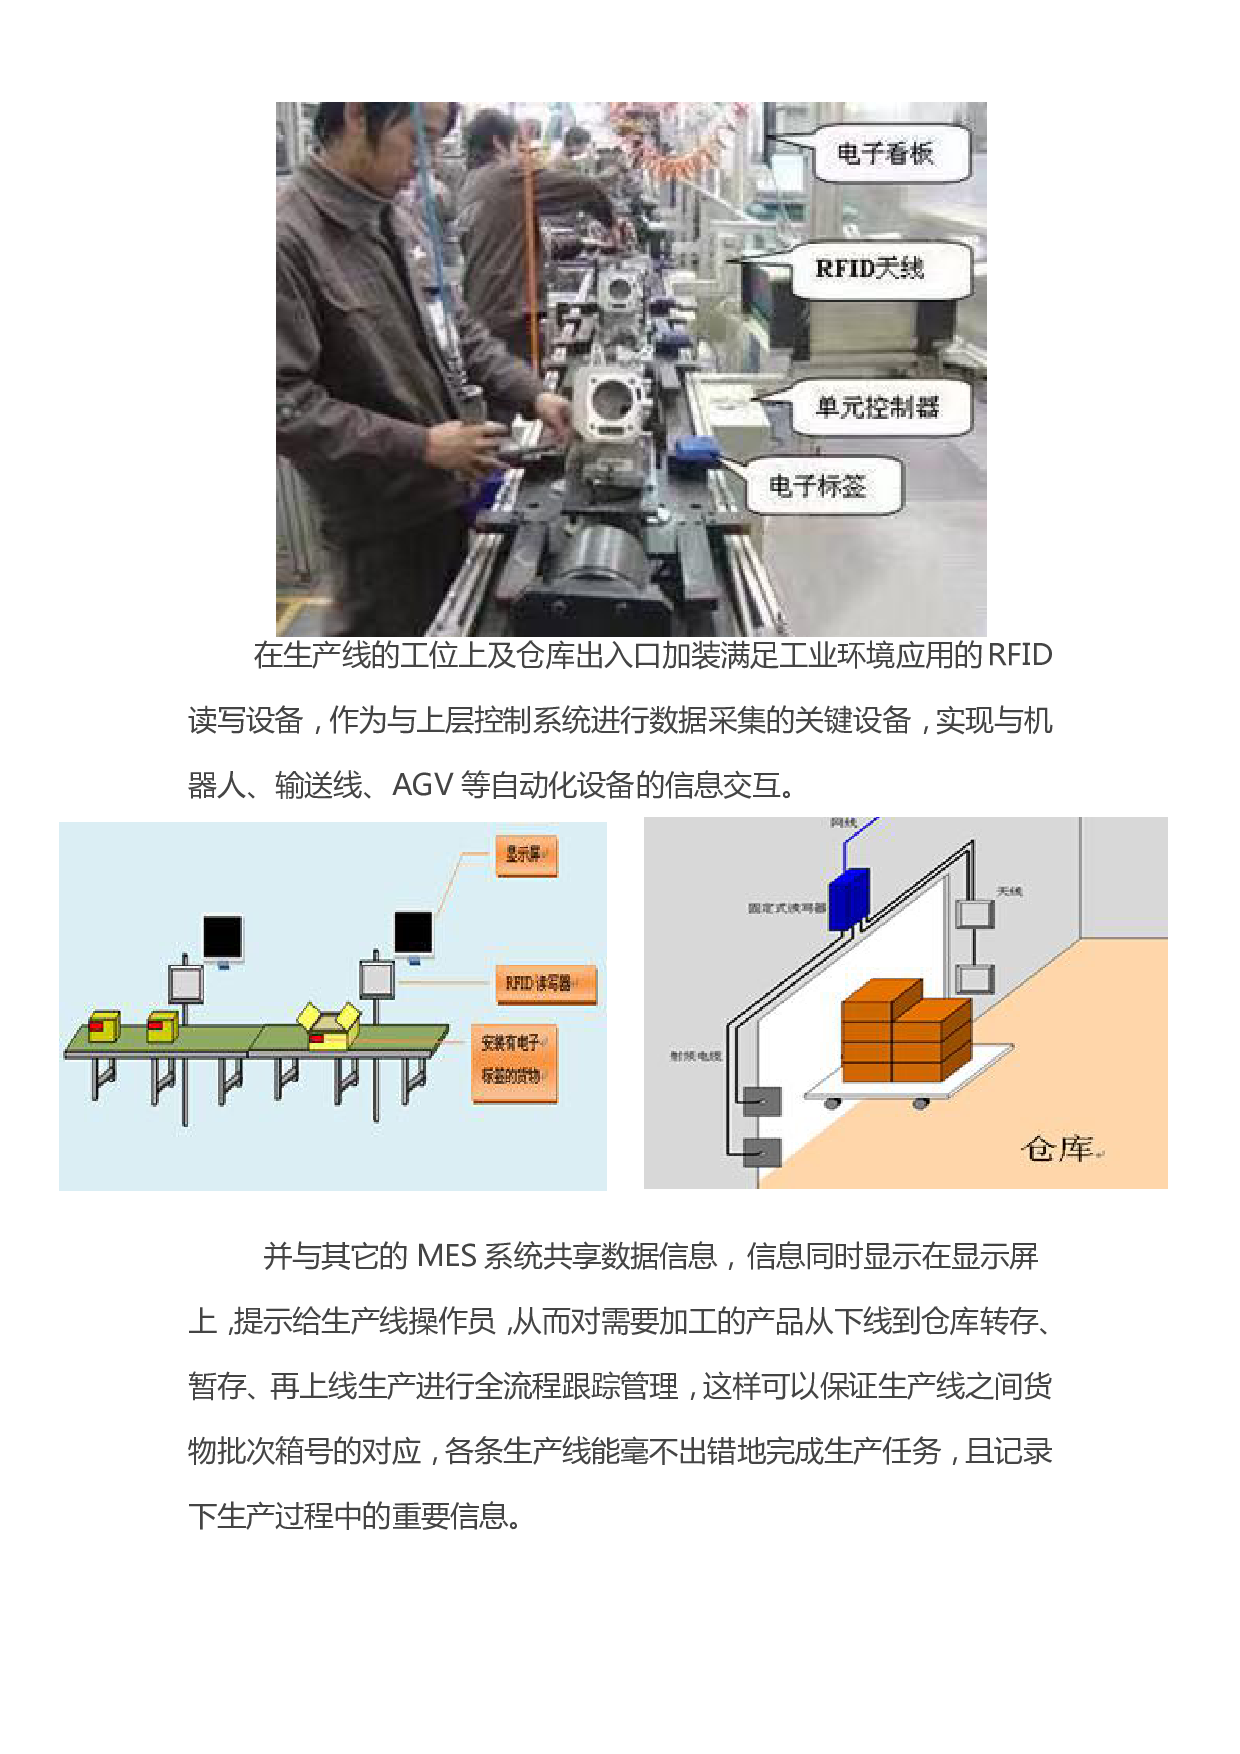 基于RFID技术的智能生产线管理系统图片